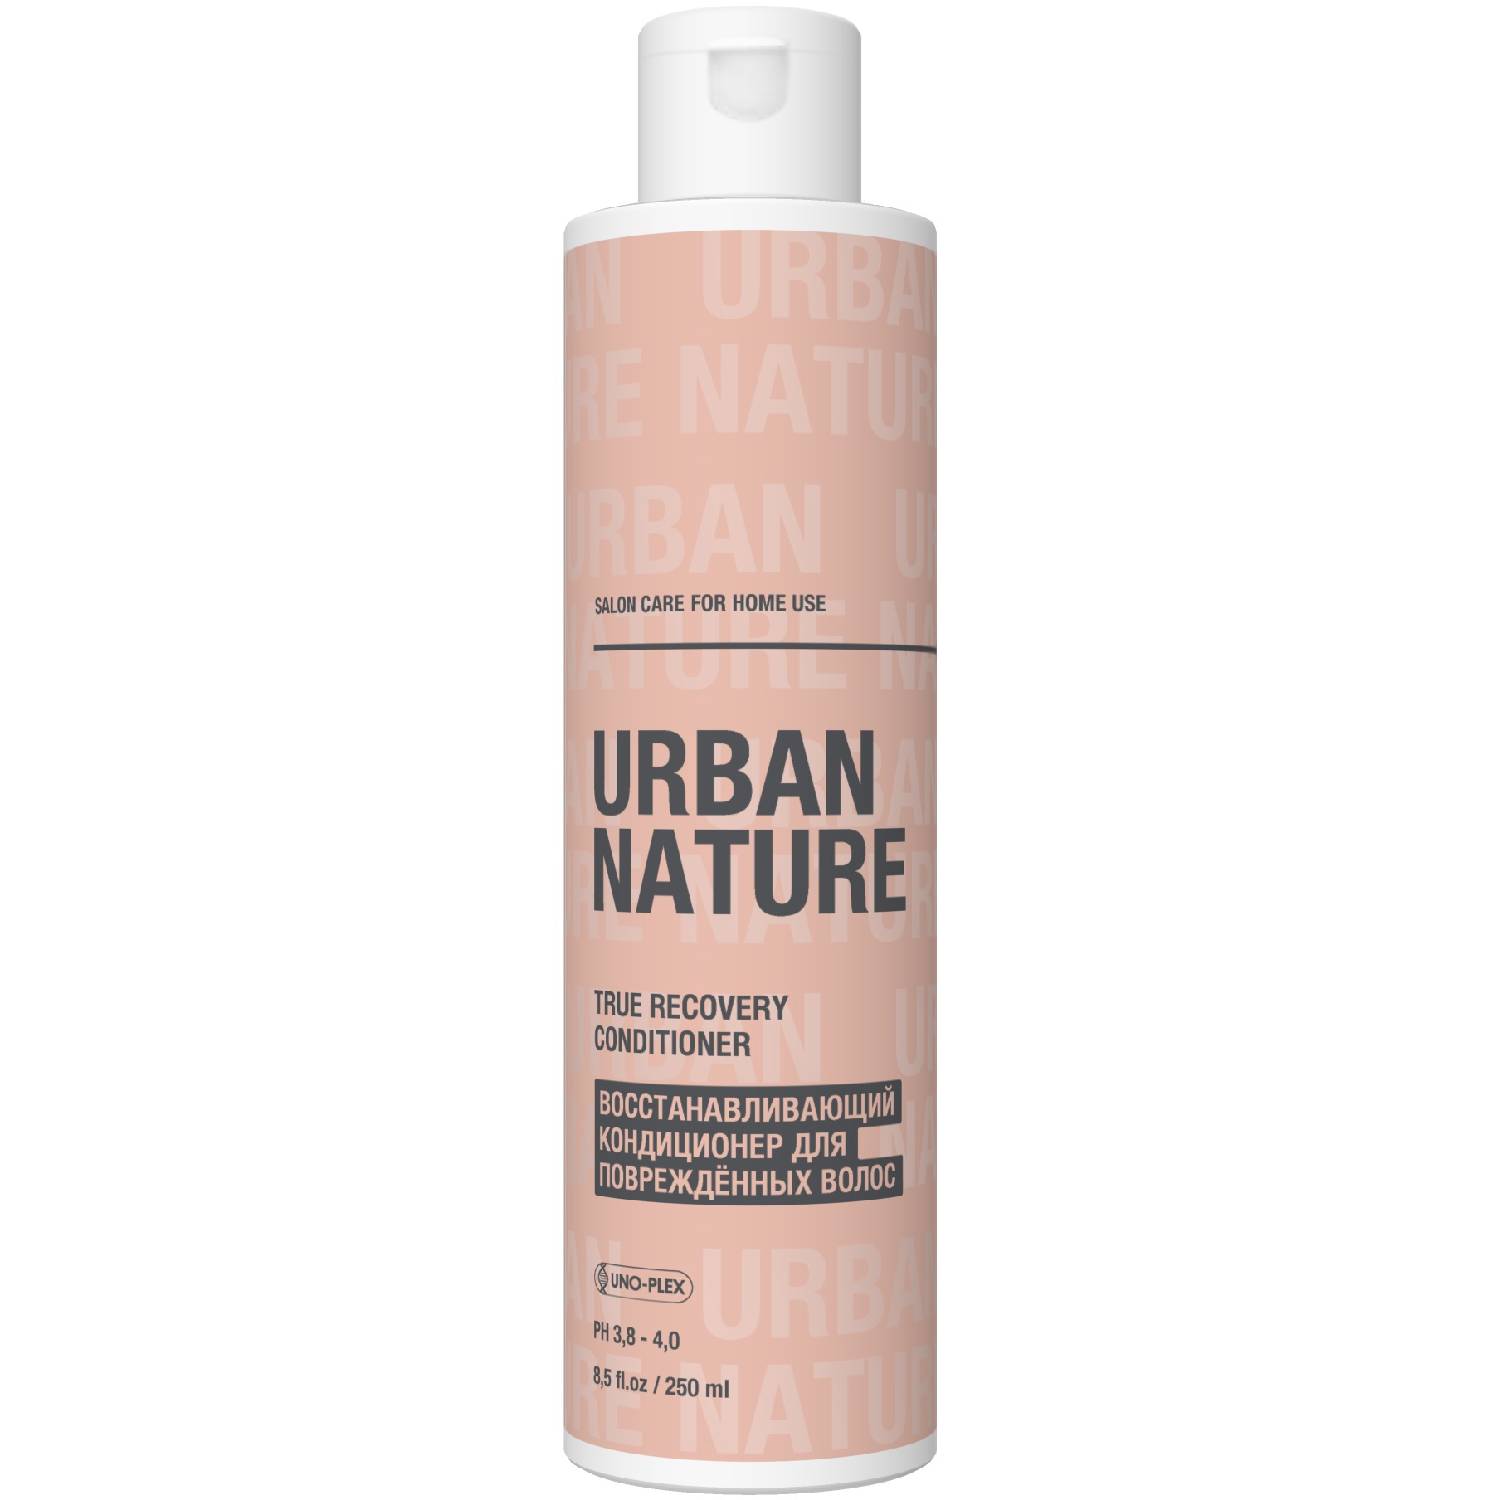 Urban Nature Восстанавливающий кондиционер для поврежденных волос, 250 мл (Urban Nature, True Recovery)